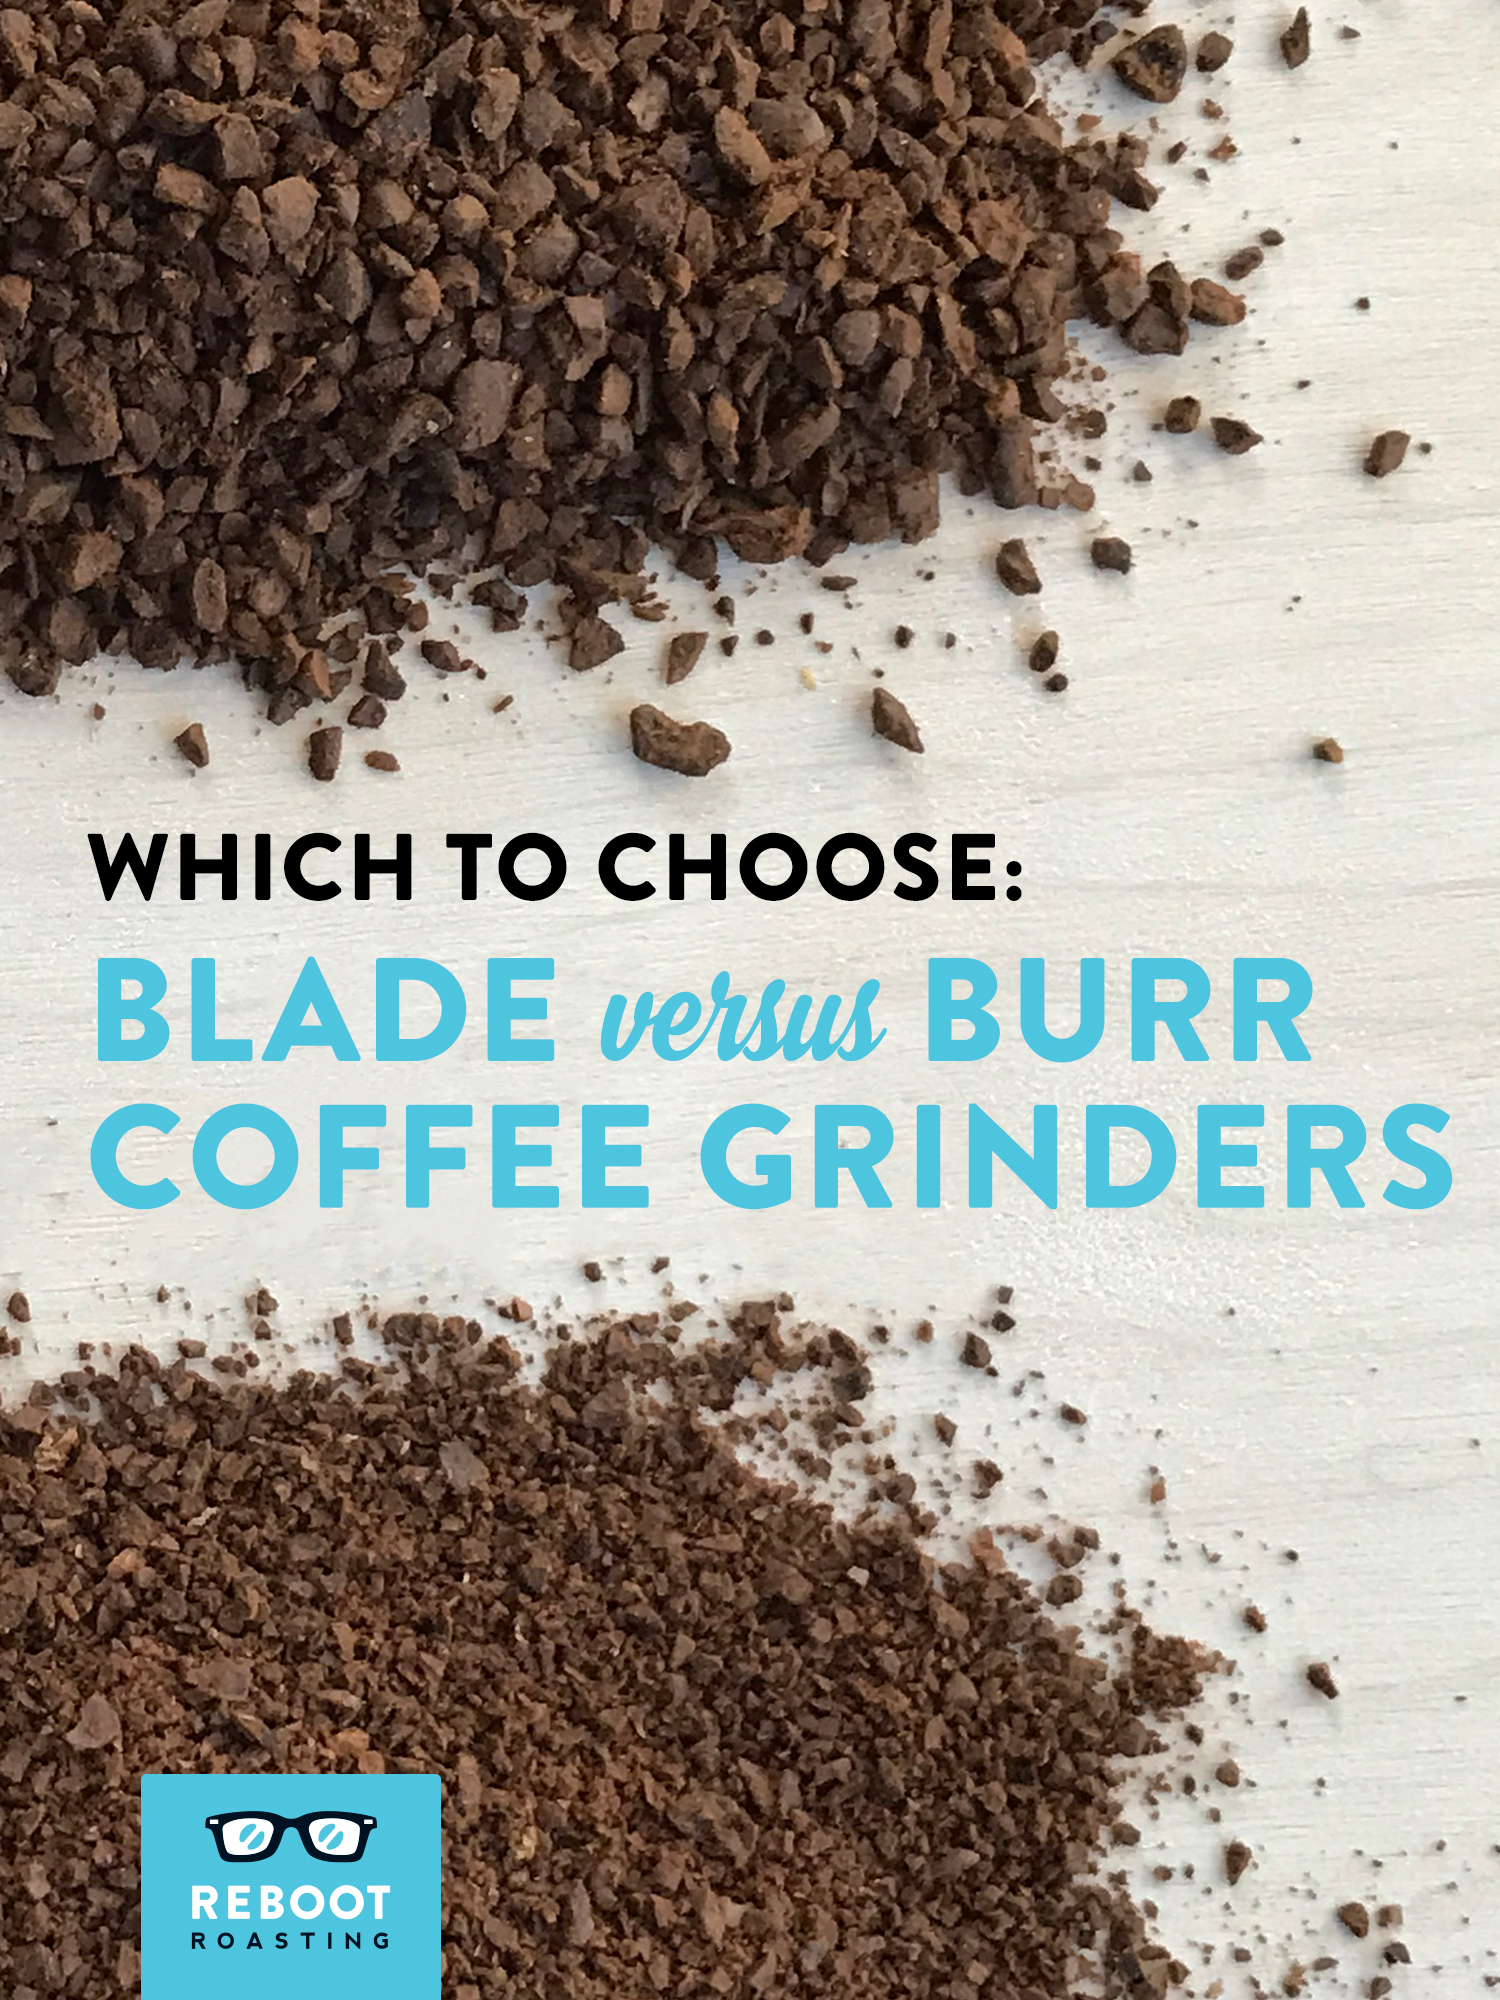 Blade versus Burr Coffee Grinders